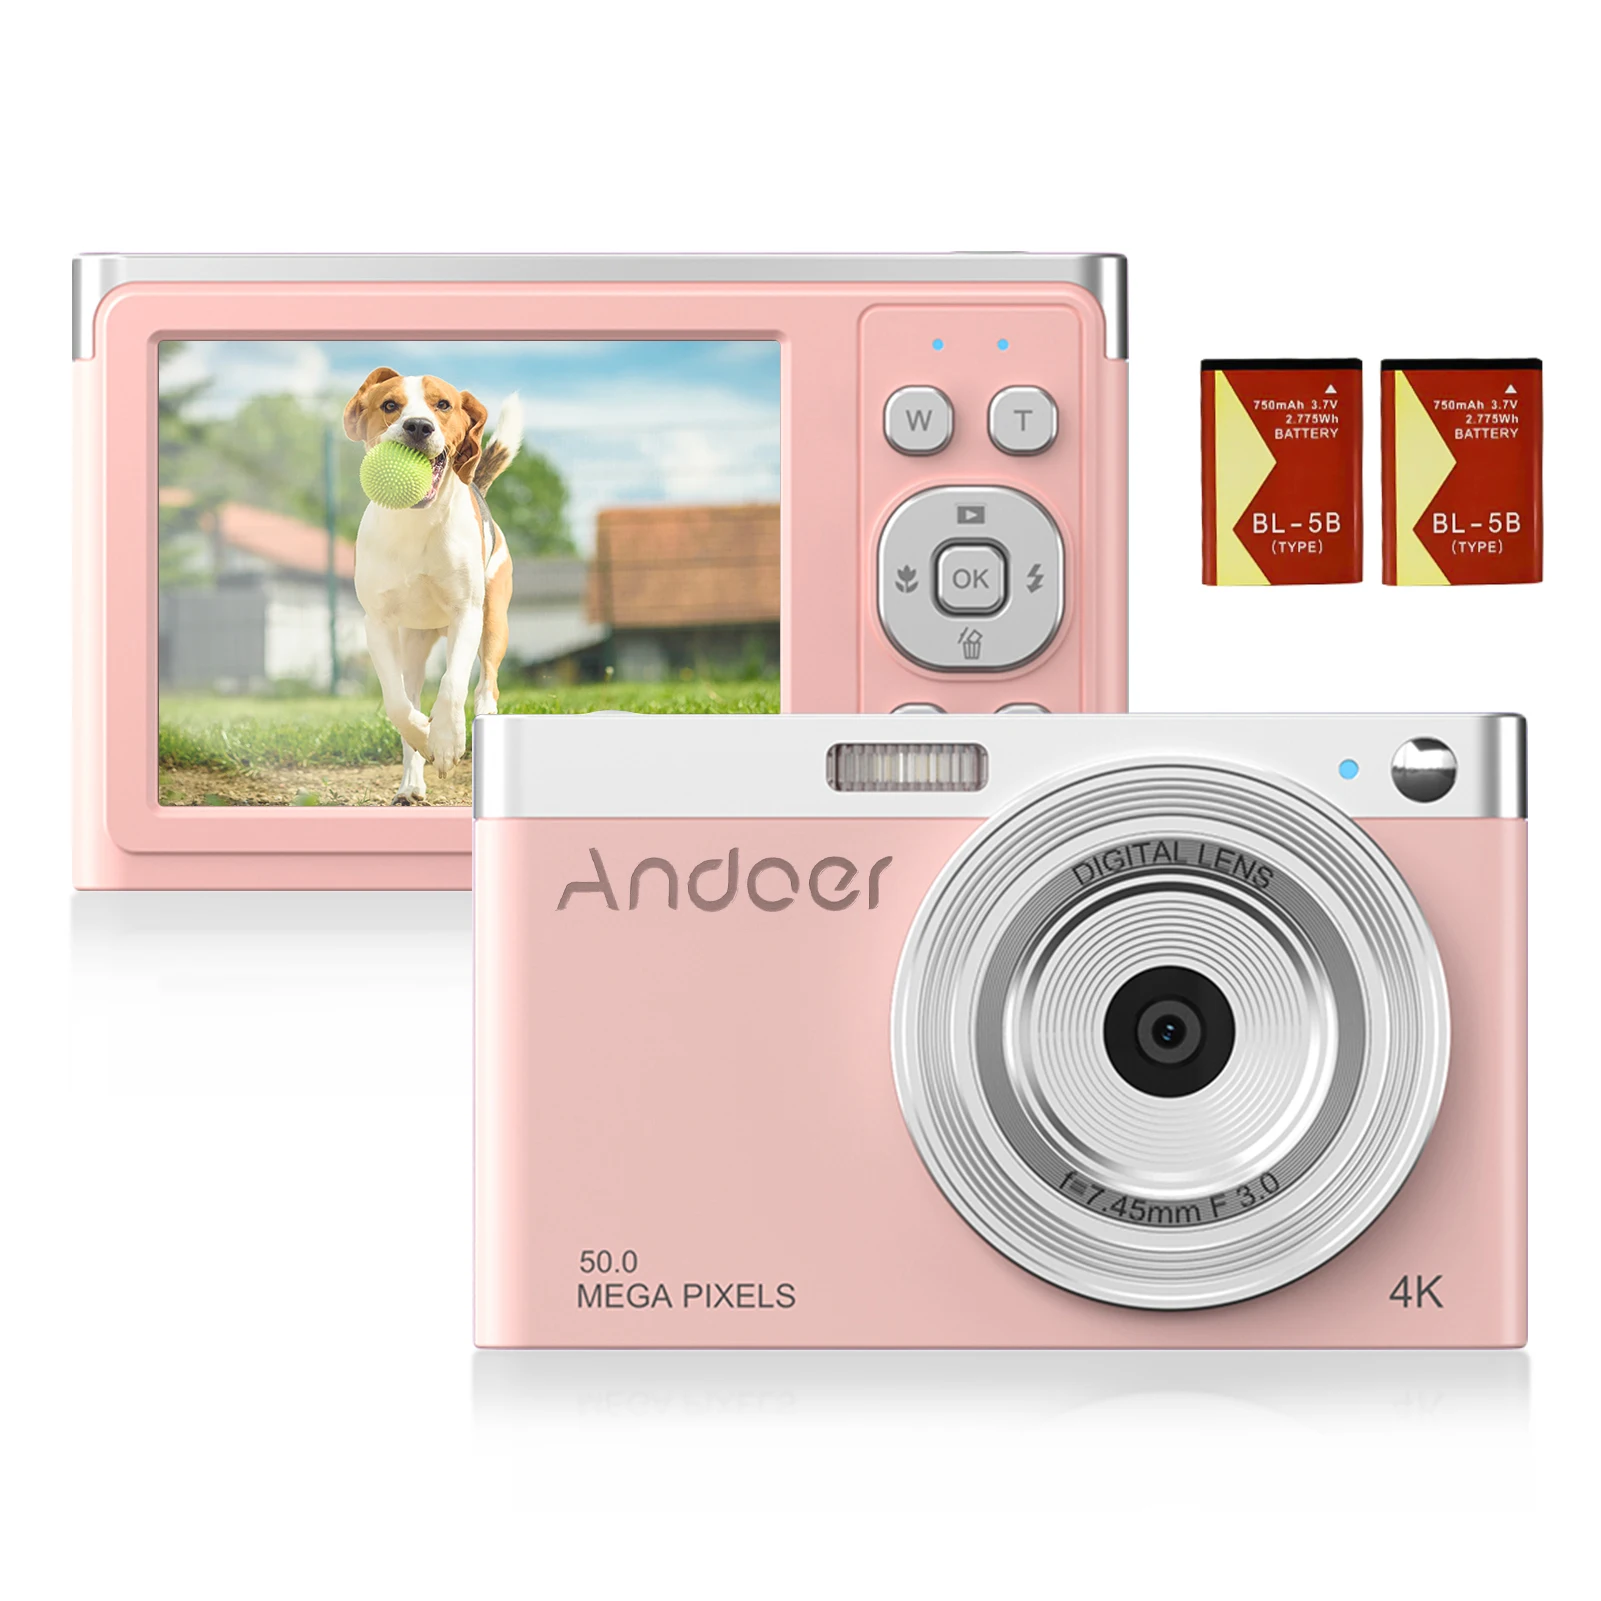 Цифровая видеокамера Andoer 4K 50 МП экран 2 88 дюйма IPS автофокус распознавание лица